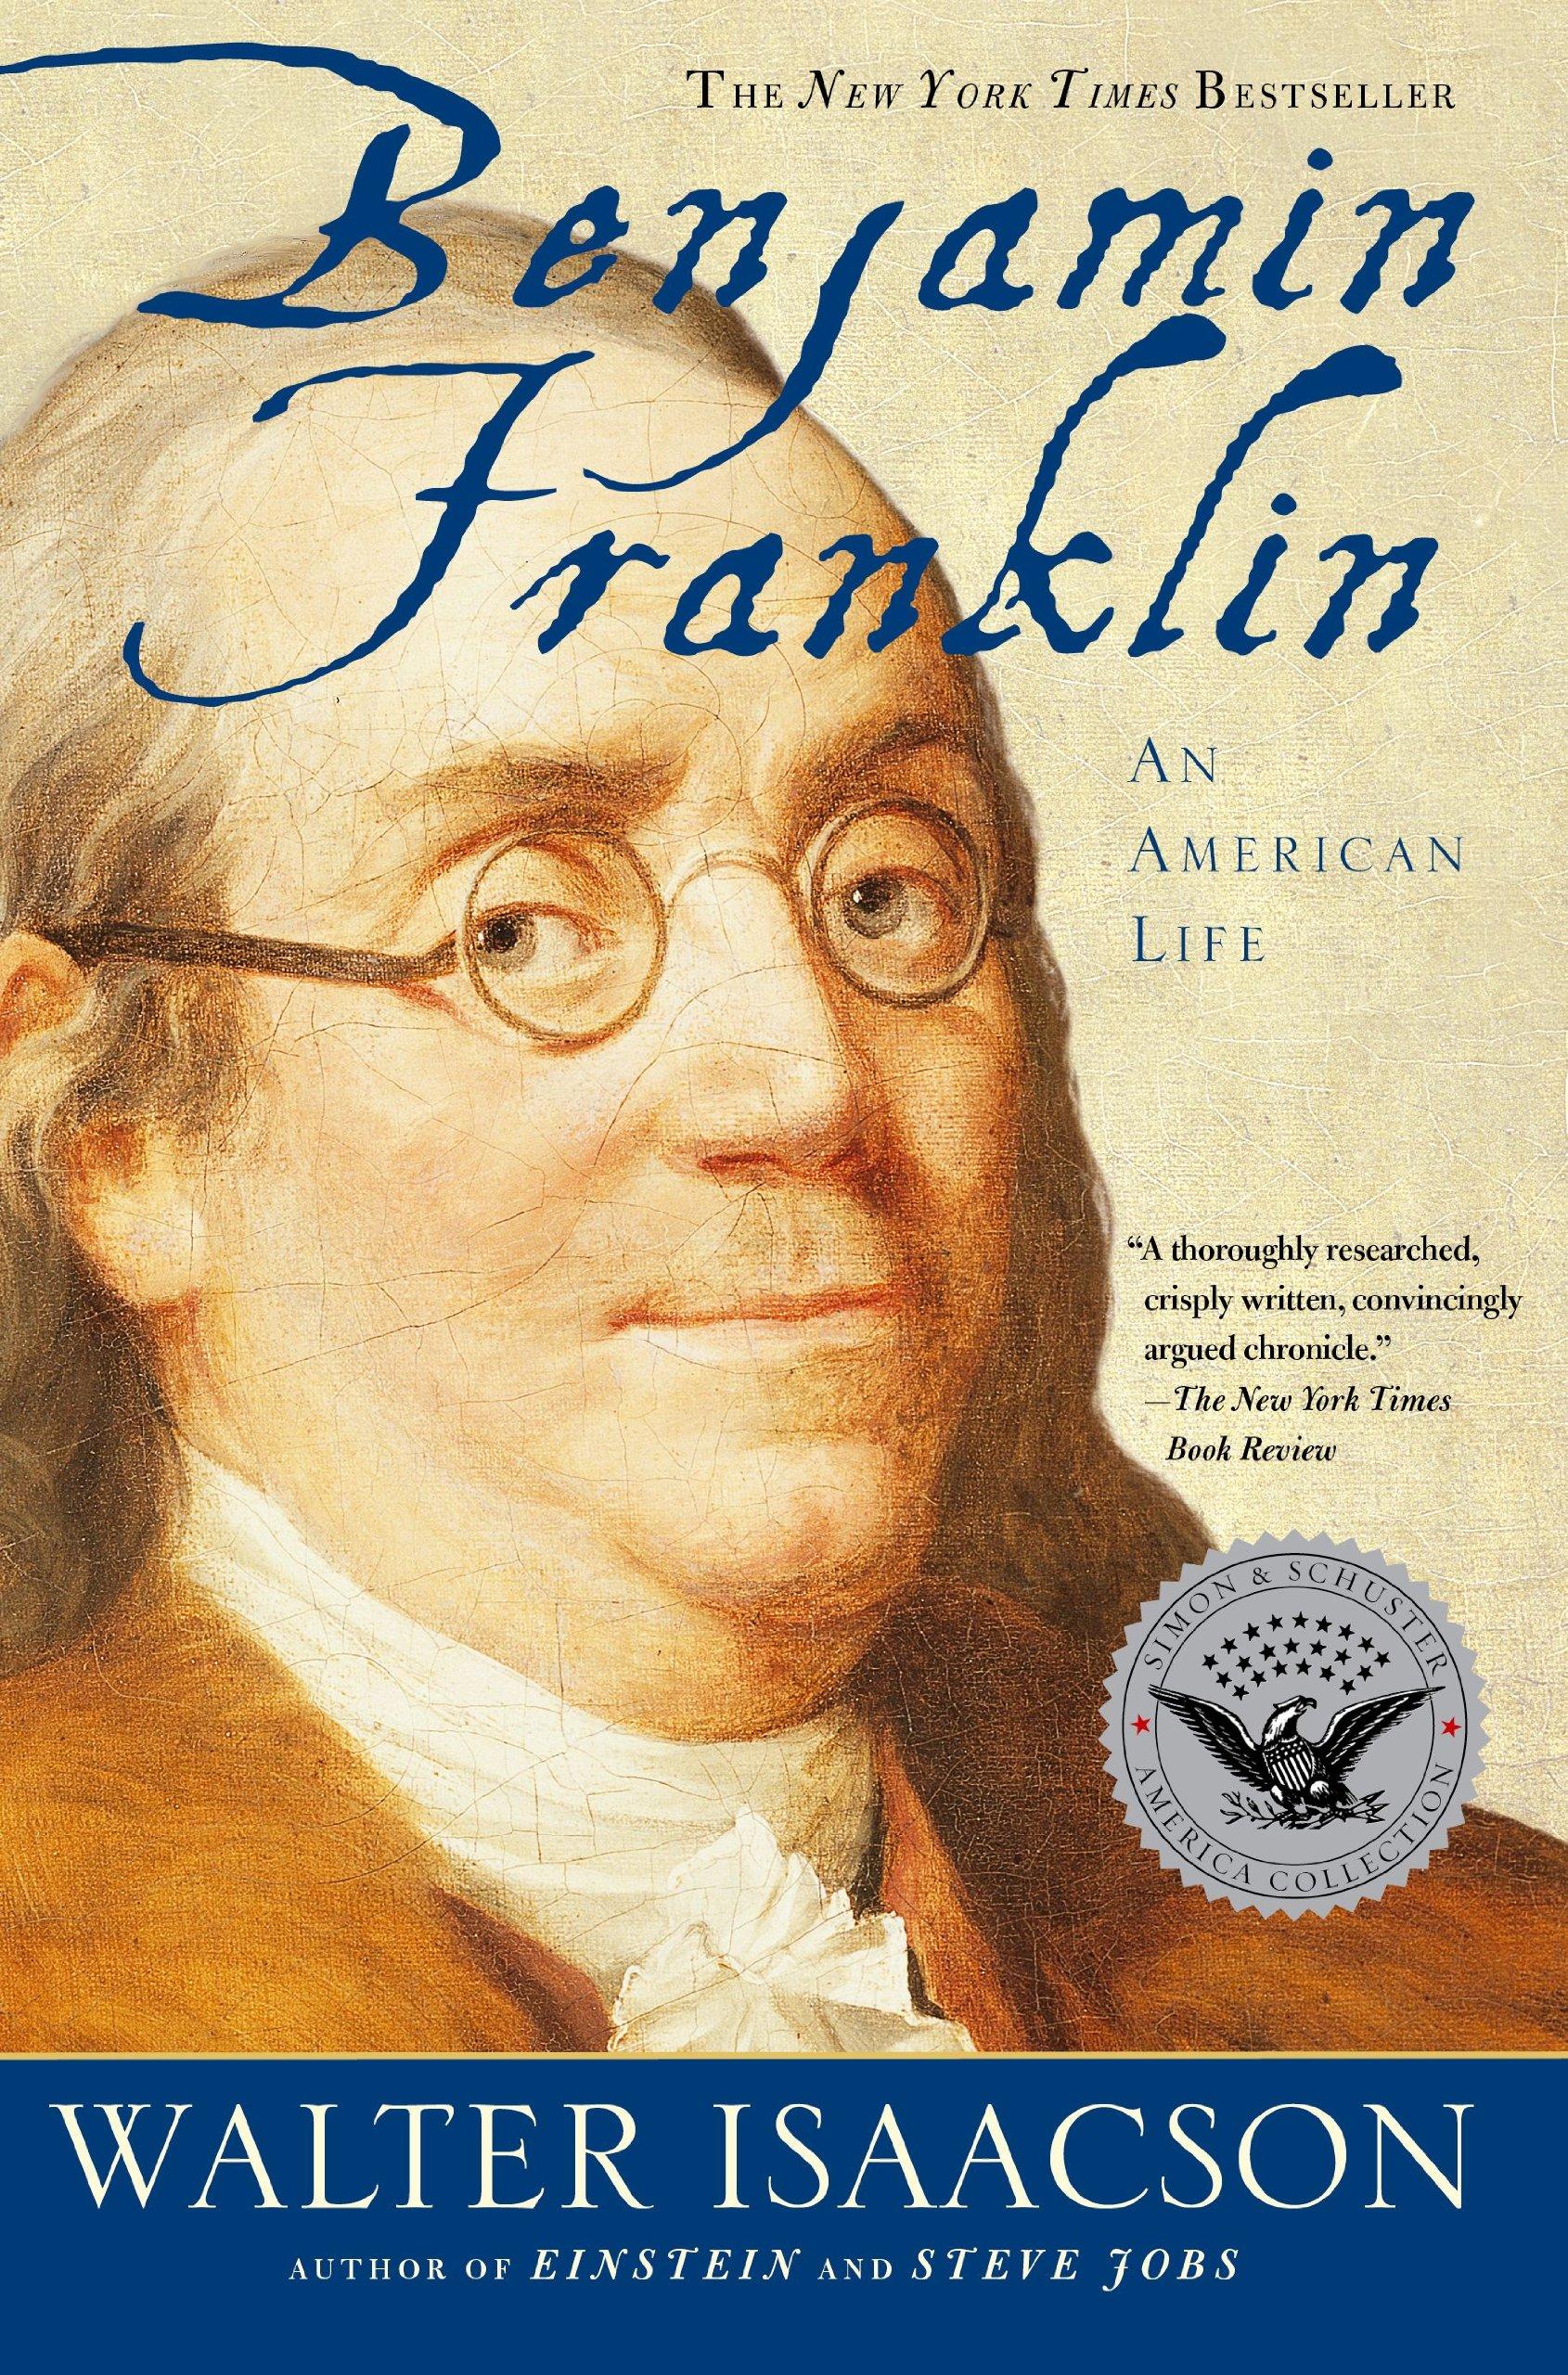 غلاف كتاب Benjamin Franklin: An American Life - كتب أثرت في حياة إيلون ماسك وساهمت في نجاحه